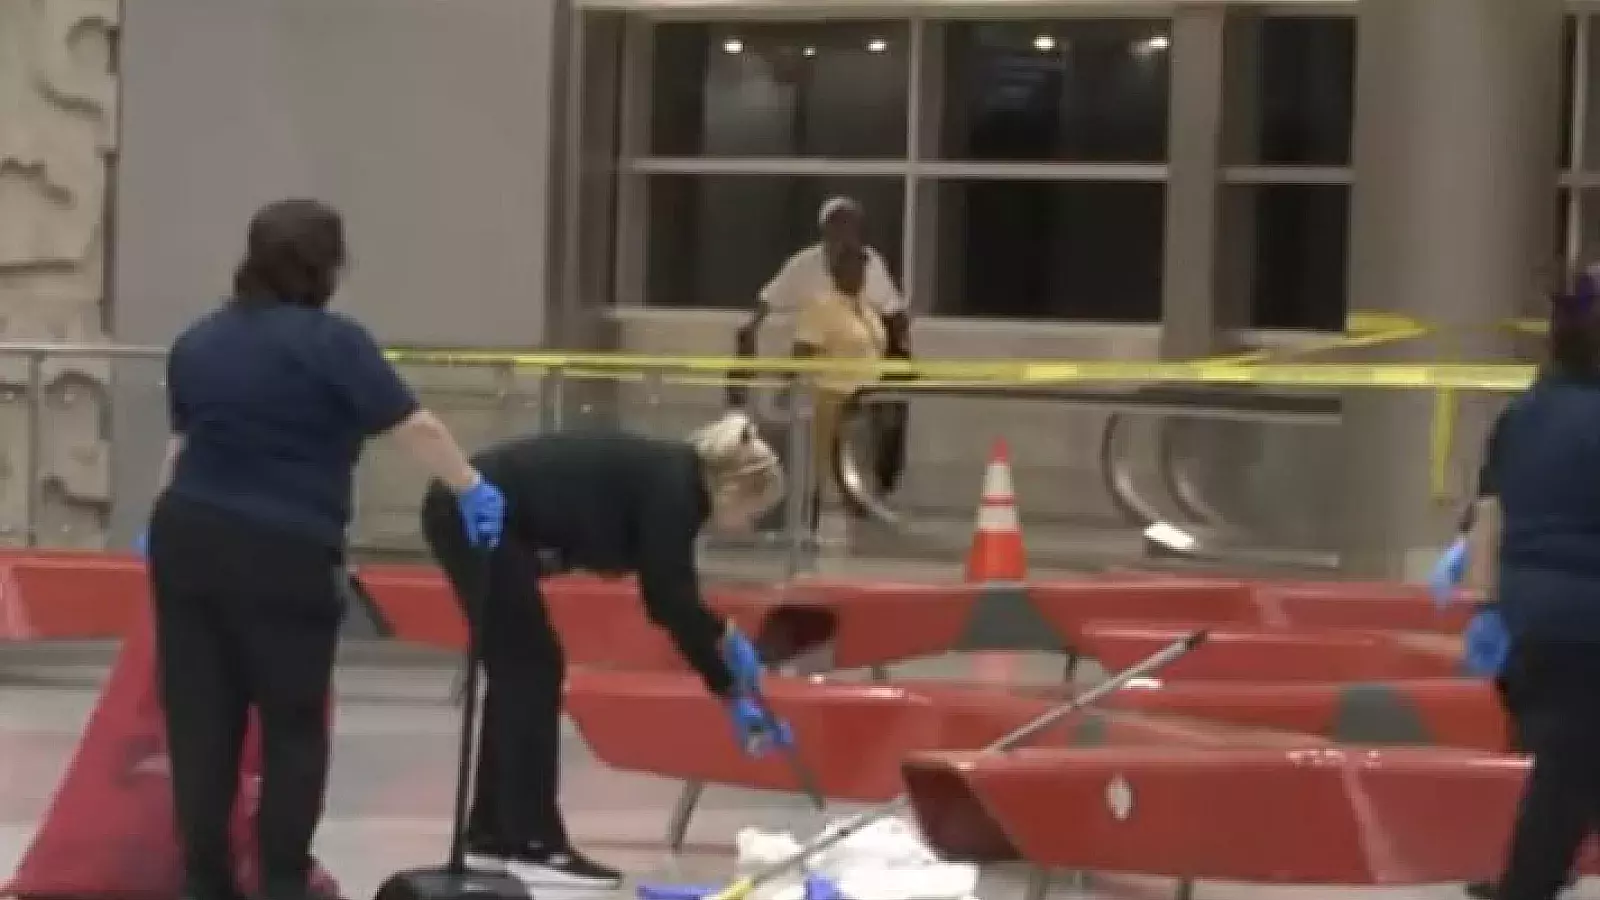 Una mujer apuñalada en terminal de llegadas internacionales del Aeropuerto Internacional de Miami